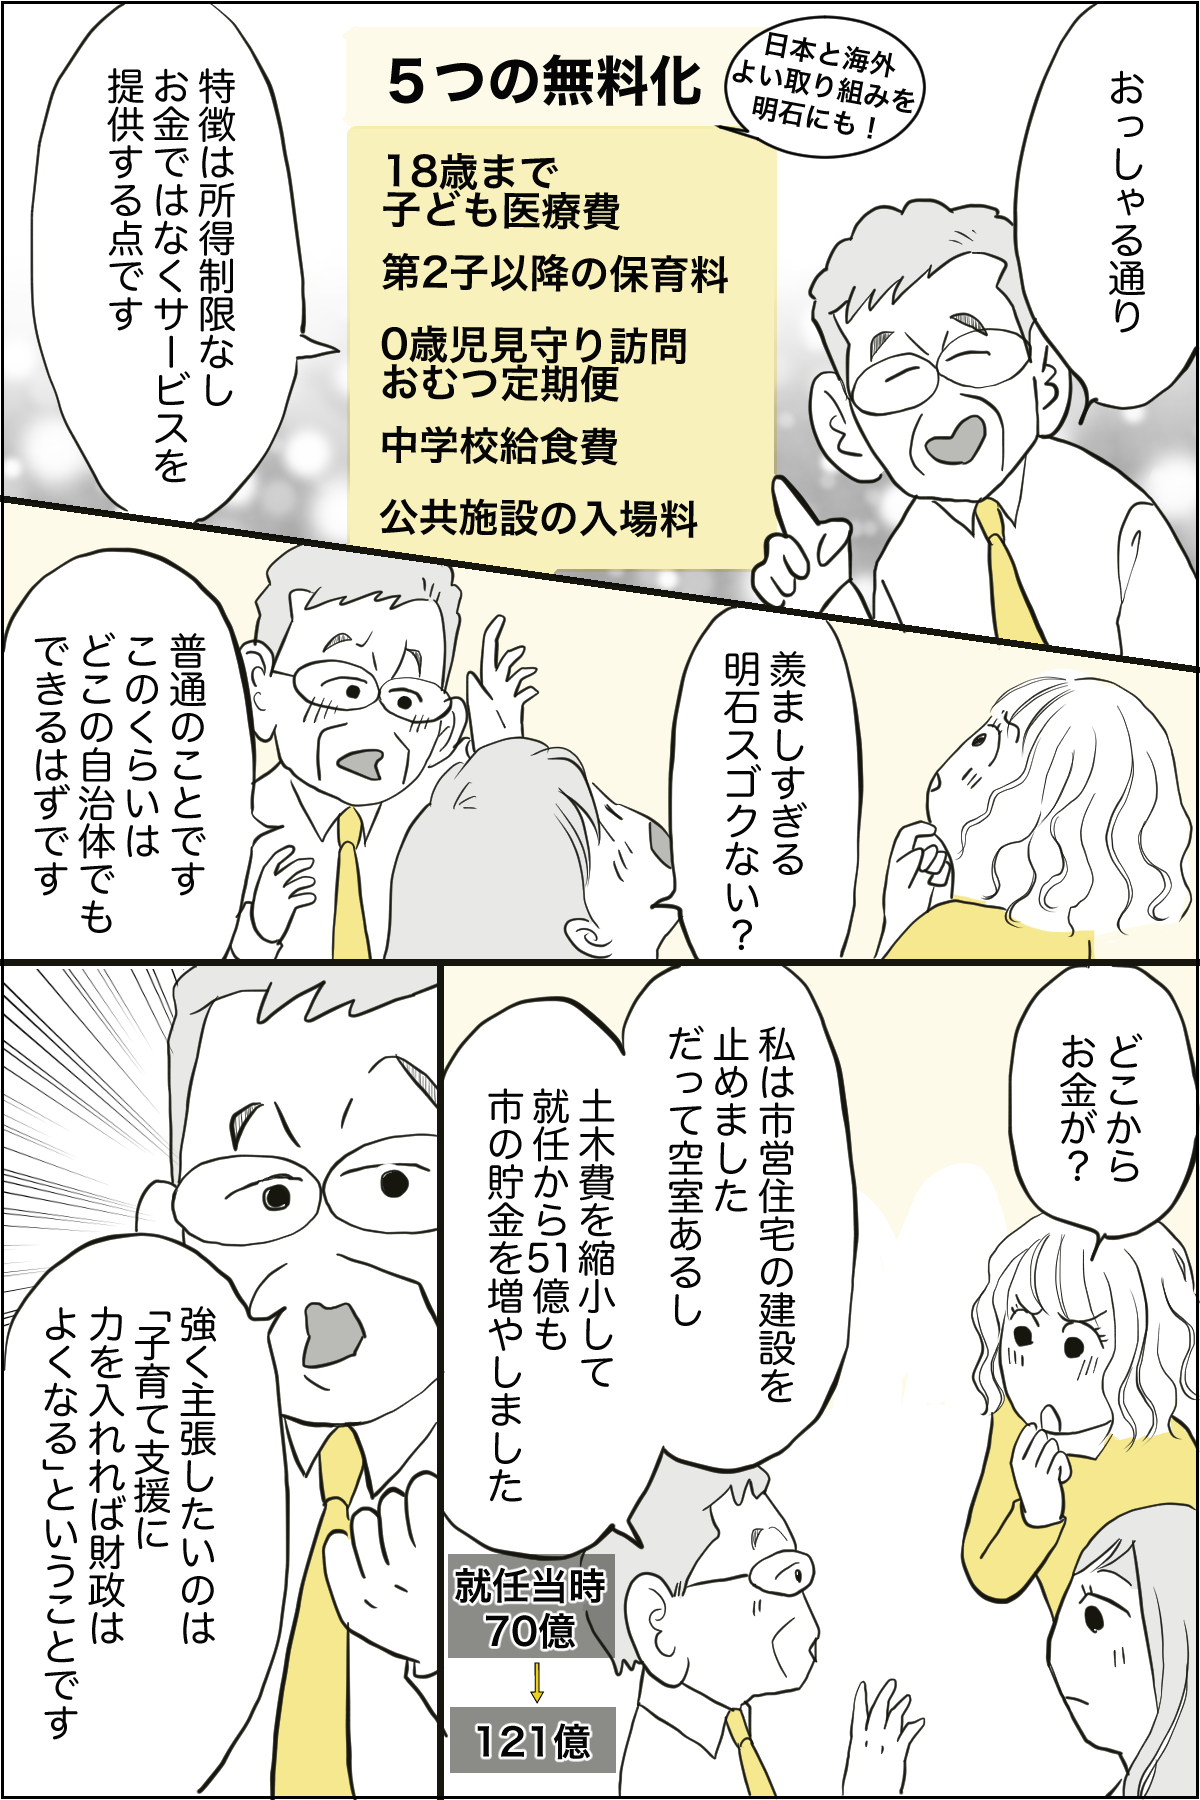 泉市長記事漫画化_出力_003